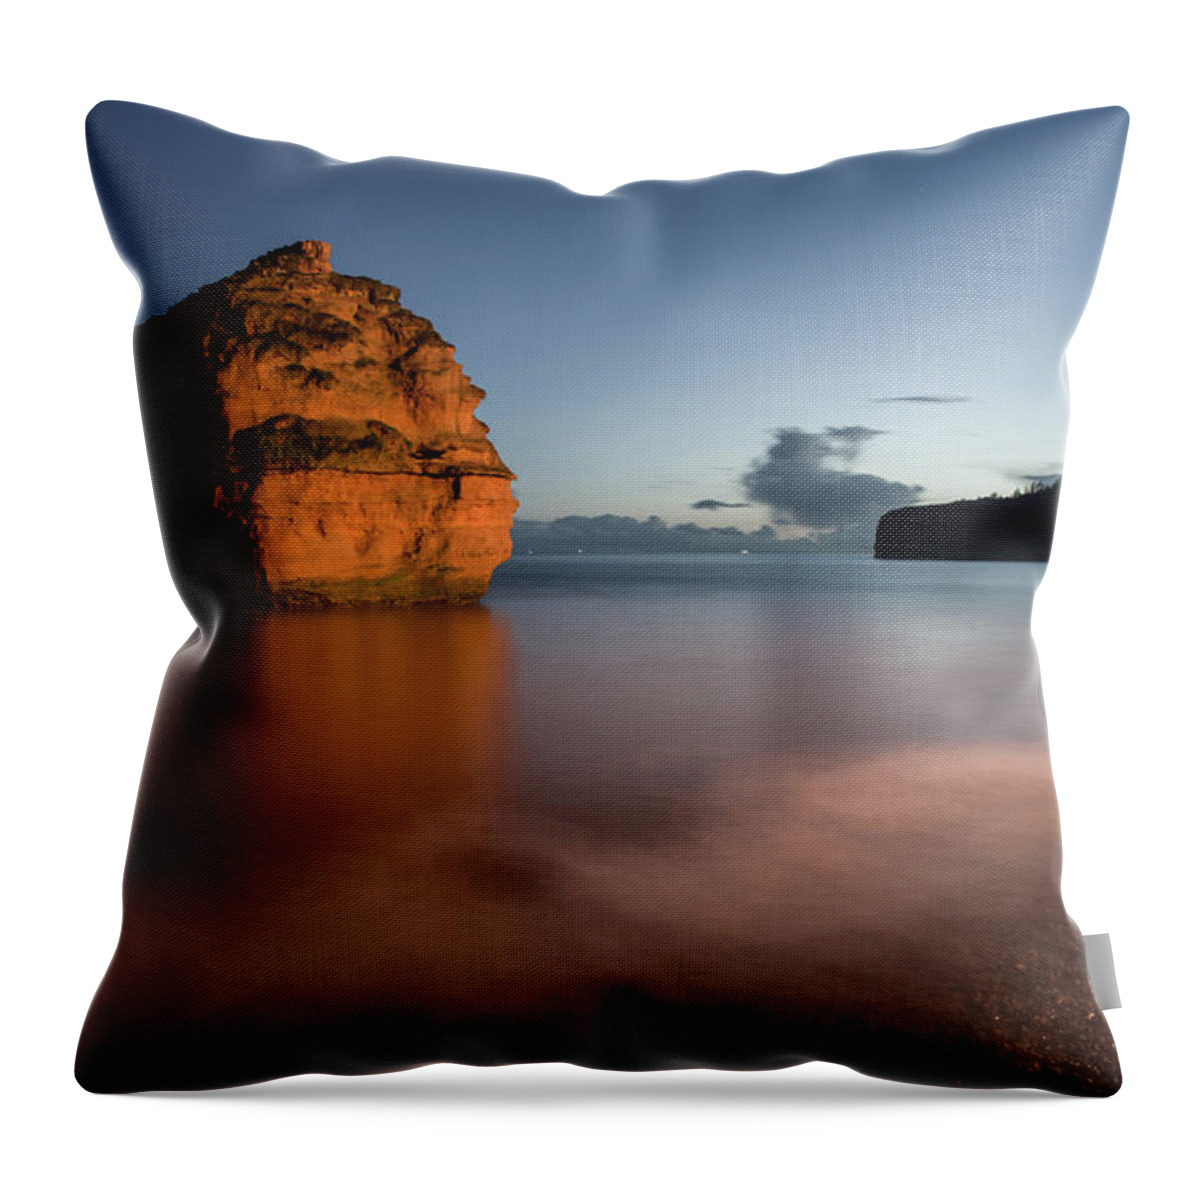 Ladram Bay Devon Throw Pillow featuring the photograph Ladram Bay in Devon #2 by Pete Hemington